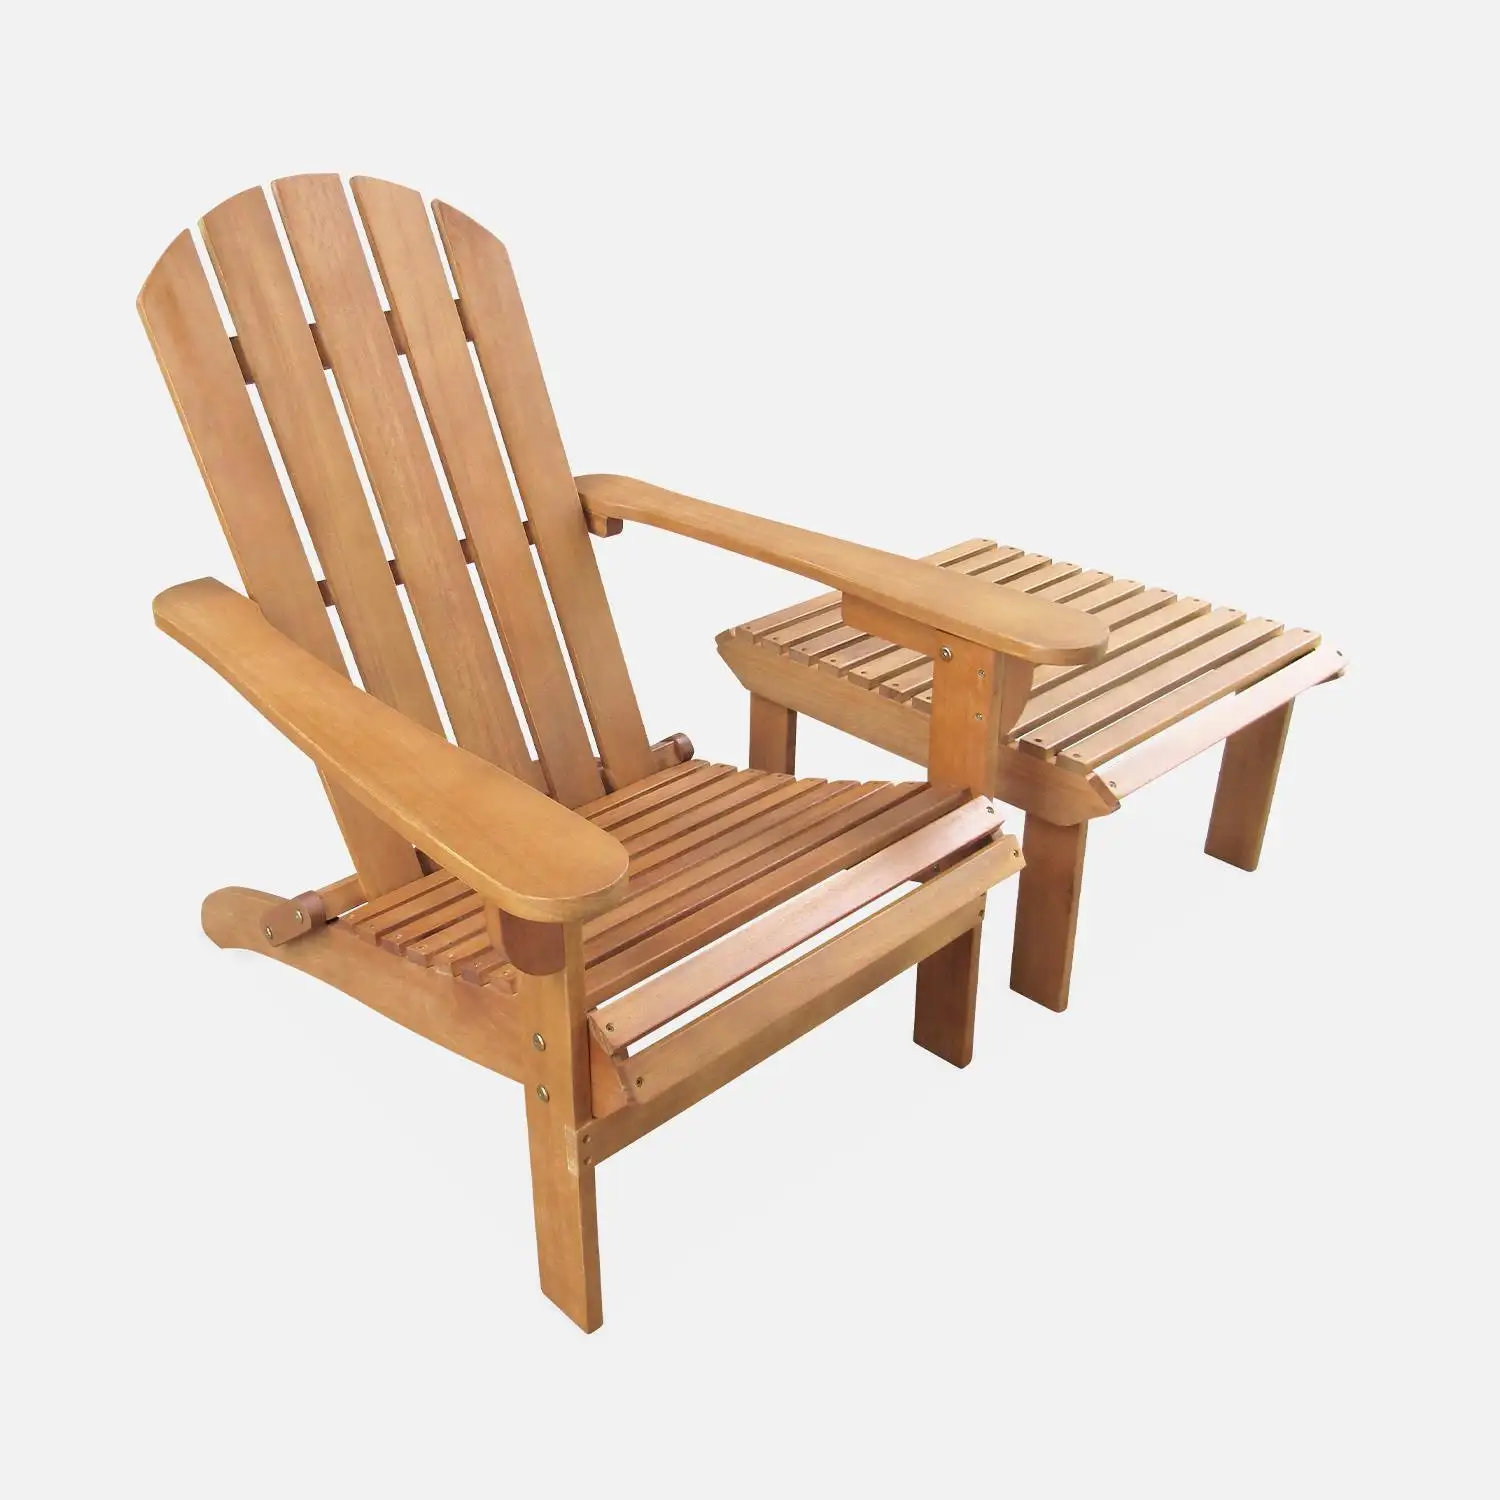 Freizeit Faltbarer Adirondack Stuhl Gartenmöbel aus Teakholz mit Mehrzweck-Beistell tisch und Beins tütze